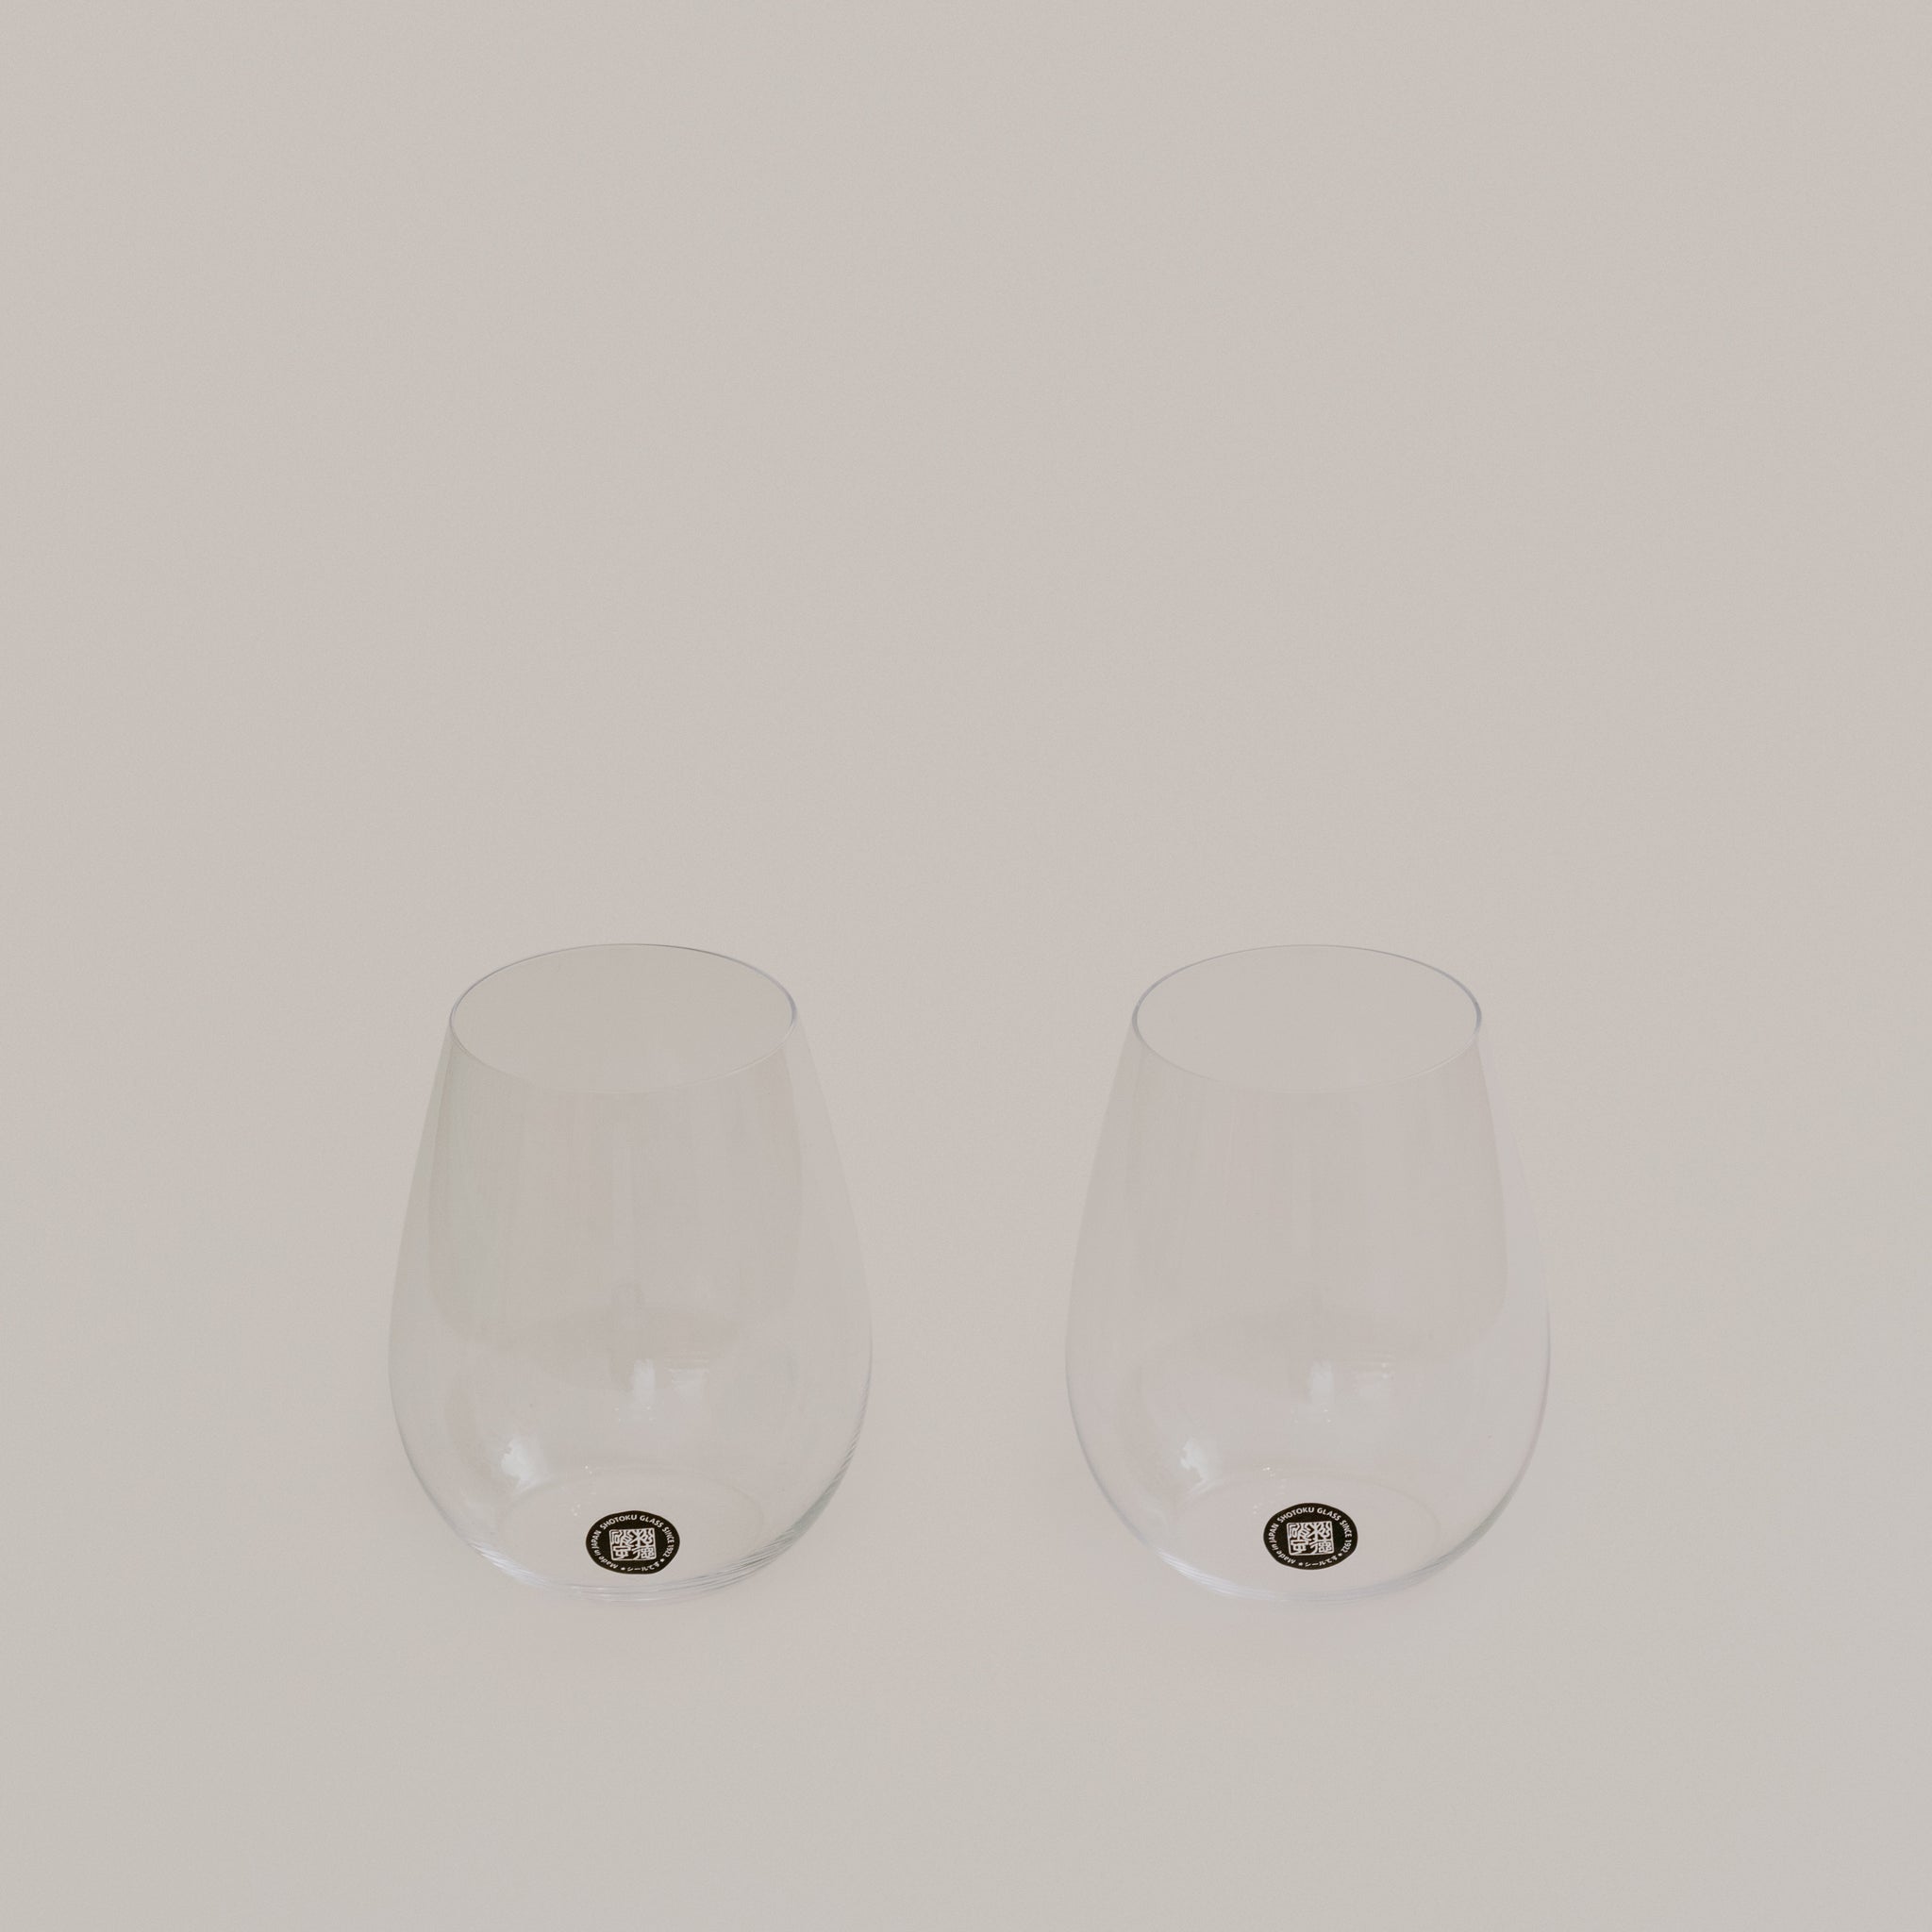 Pair of Ultra-thin Wine Usuhari Glasses